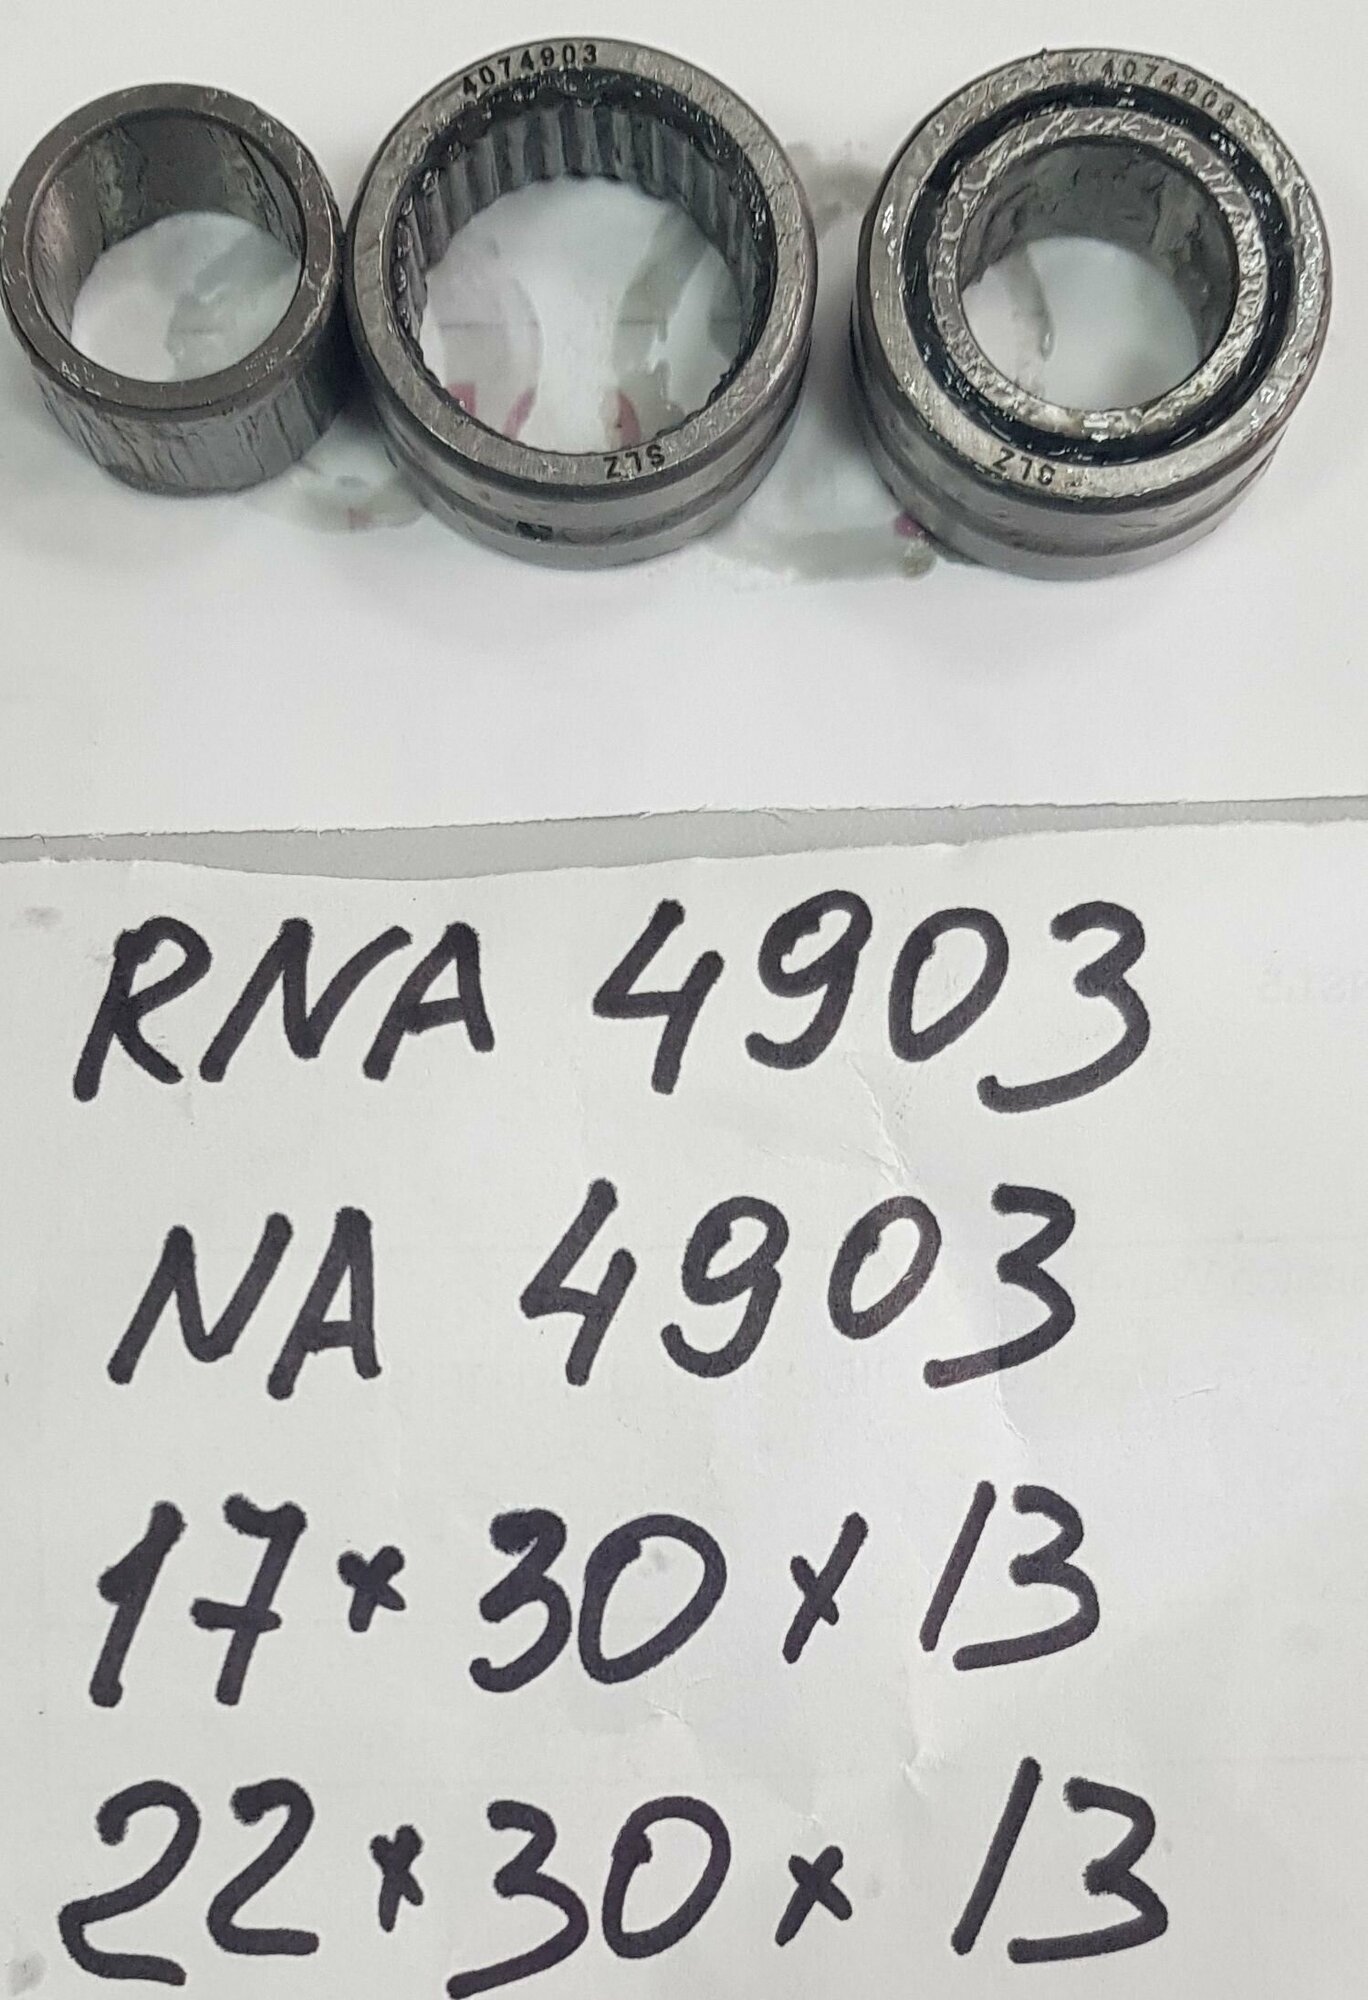 Игольчатый подшипник NA4903 (RNA4903) комплект 2 шт.